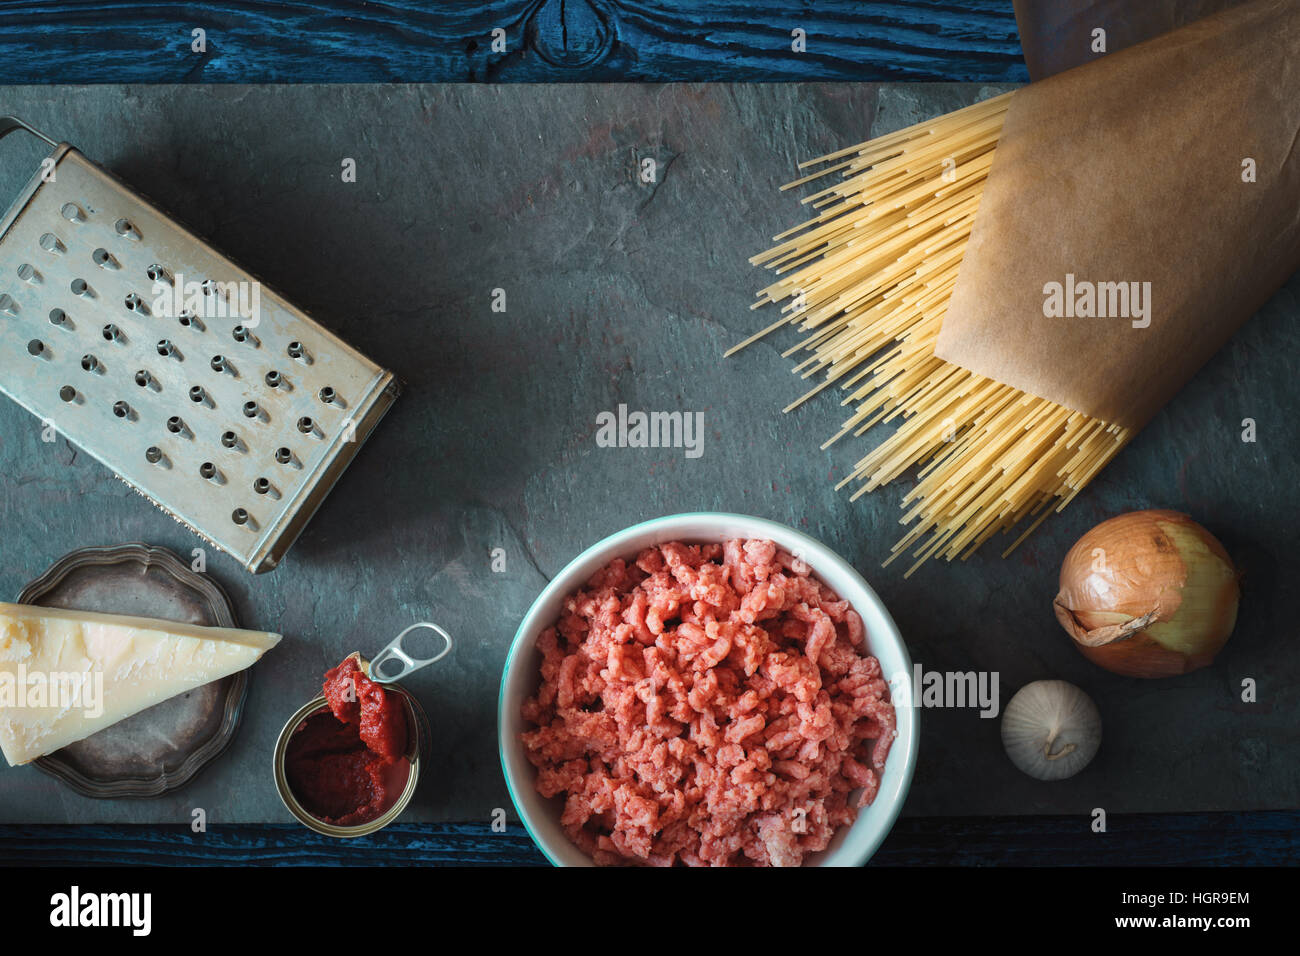 Ingrédients pour spaghetti avec meatball sur la pierre horizontale d'arrière-plan Banque D'Images